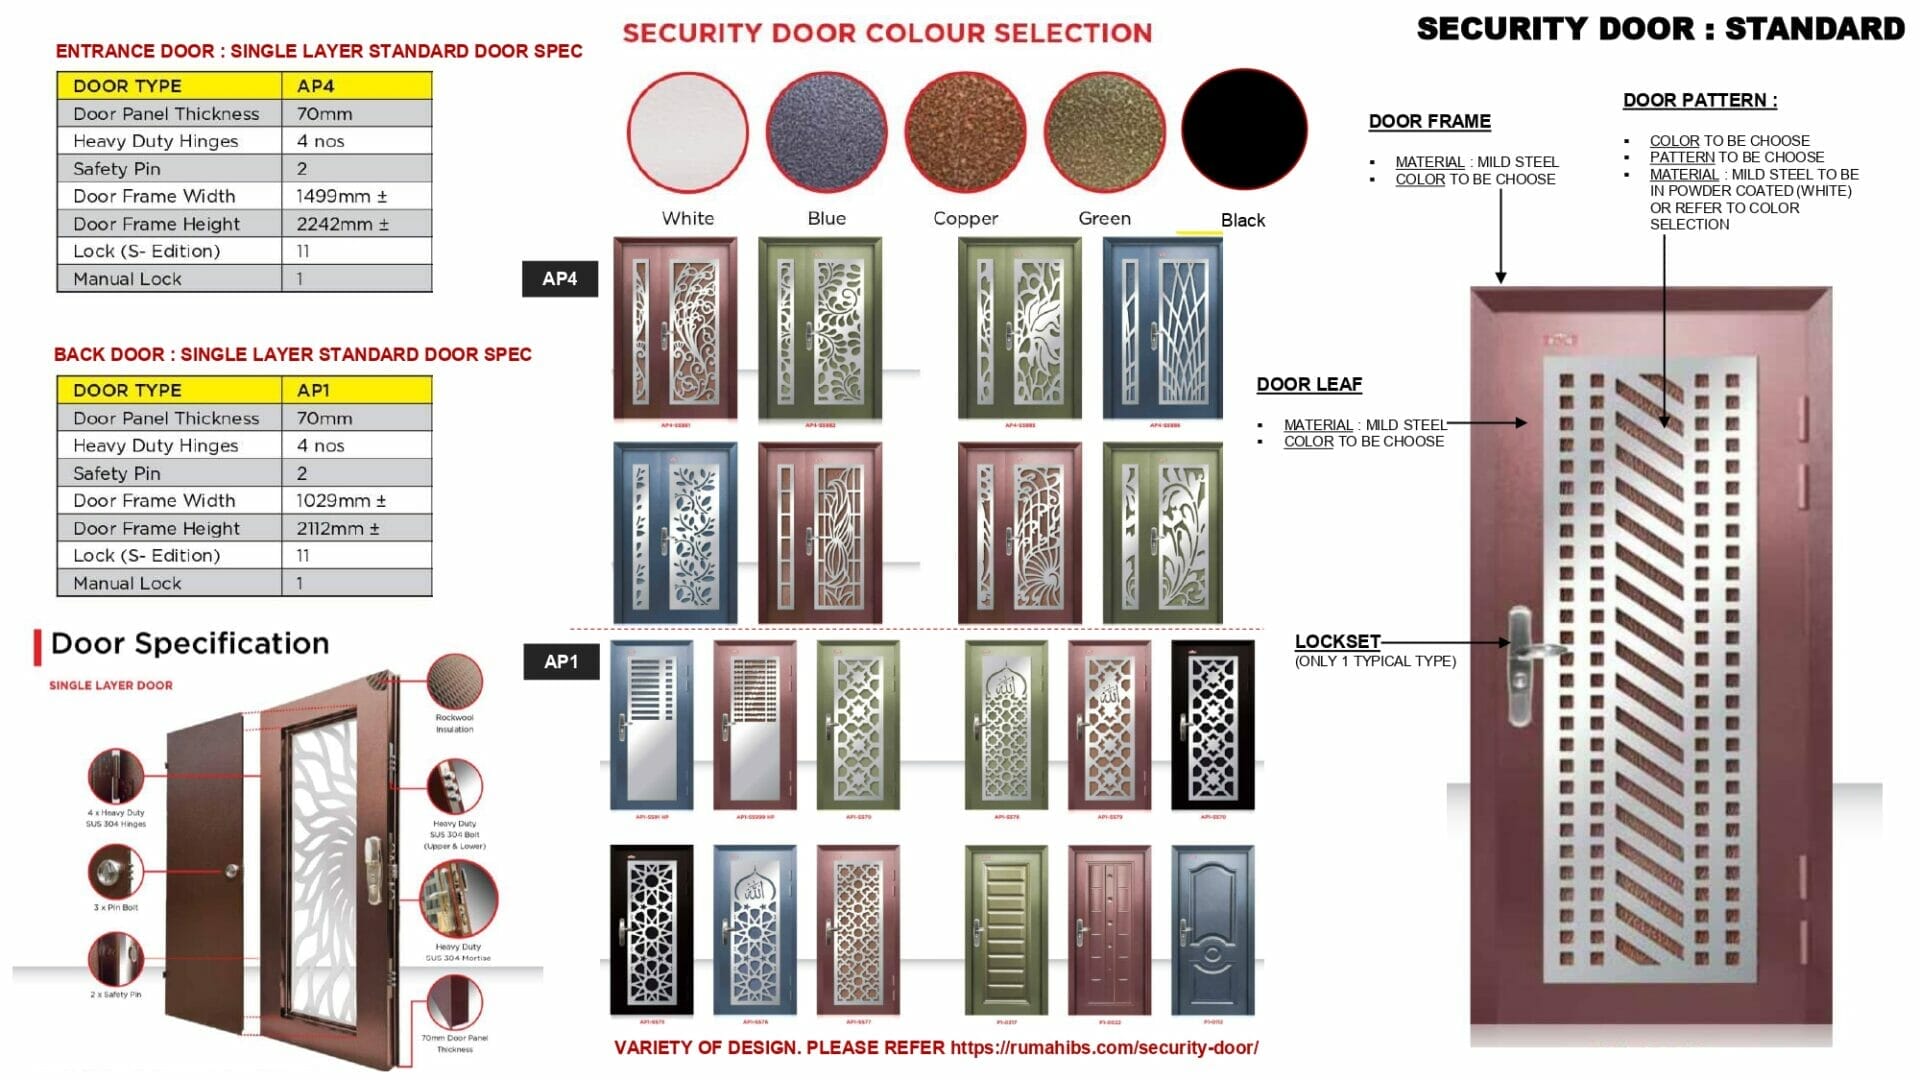 Security Door: Back Door 1